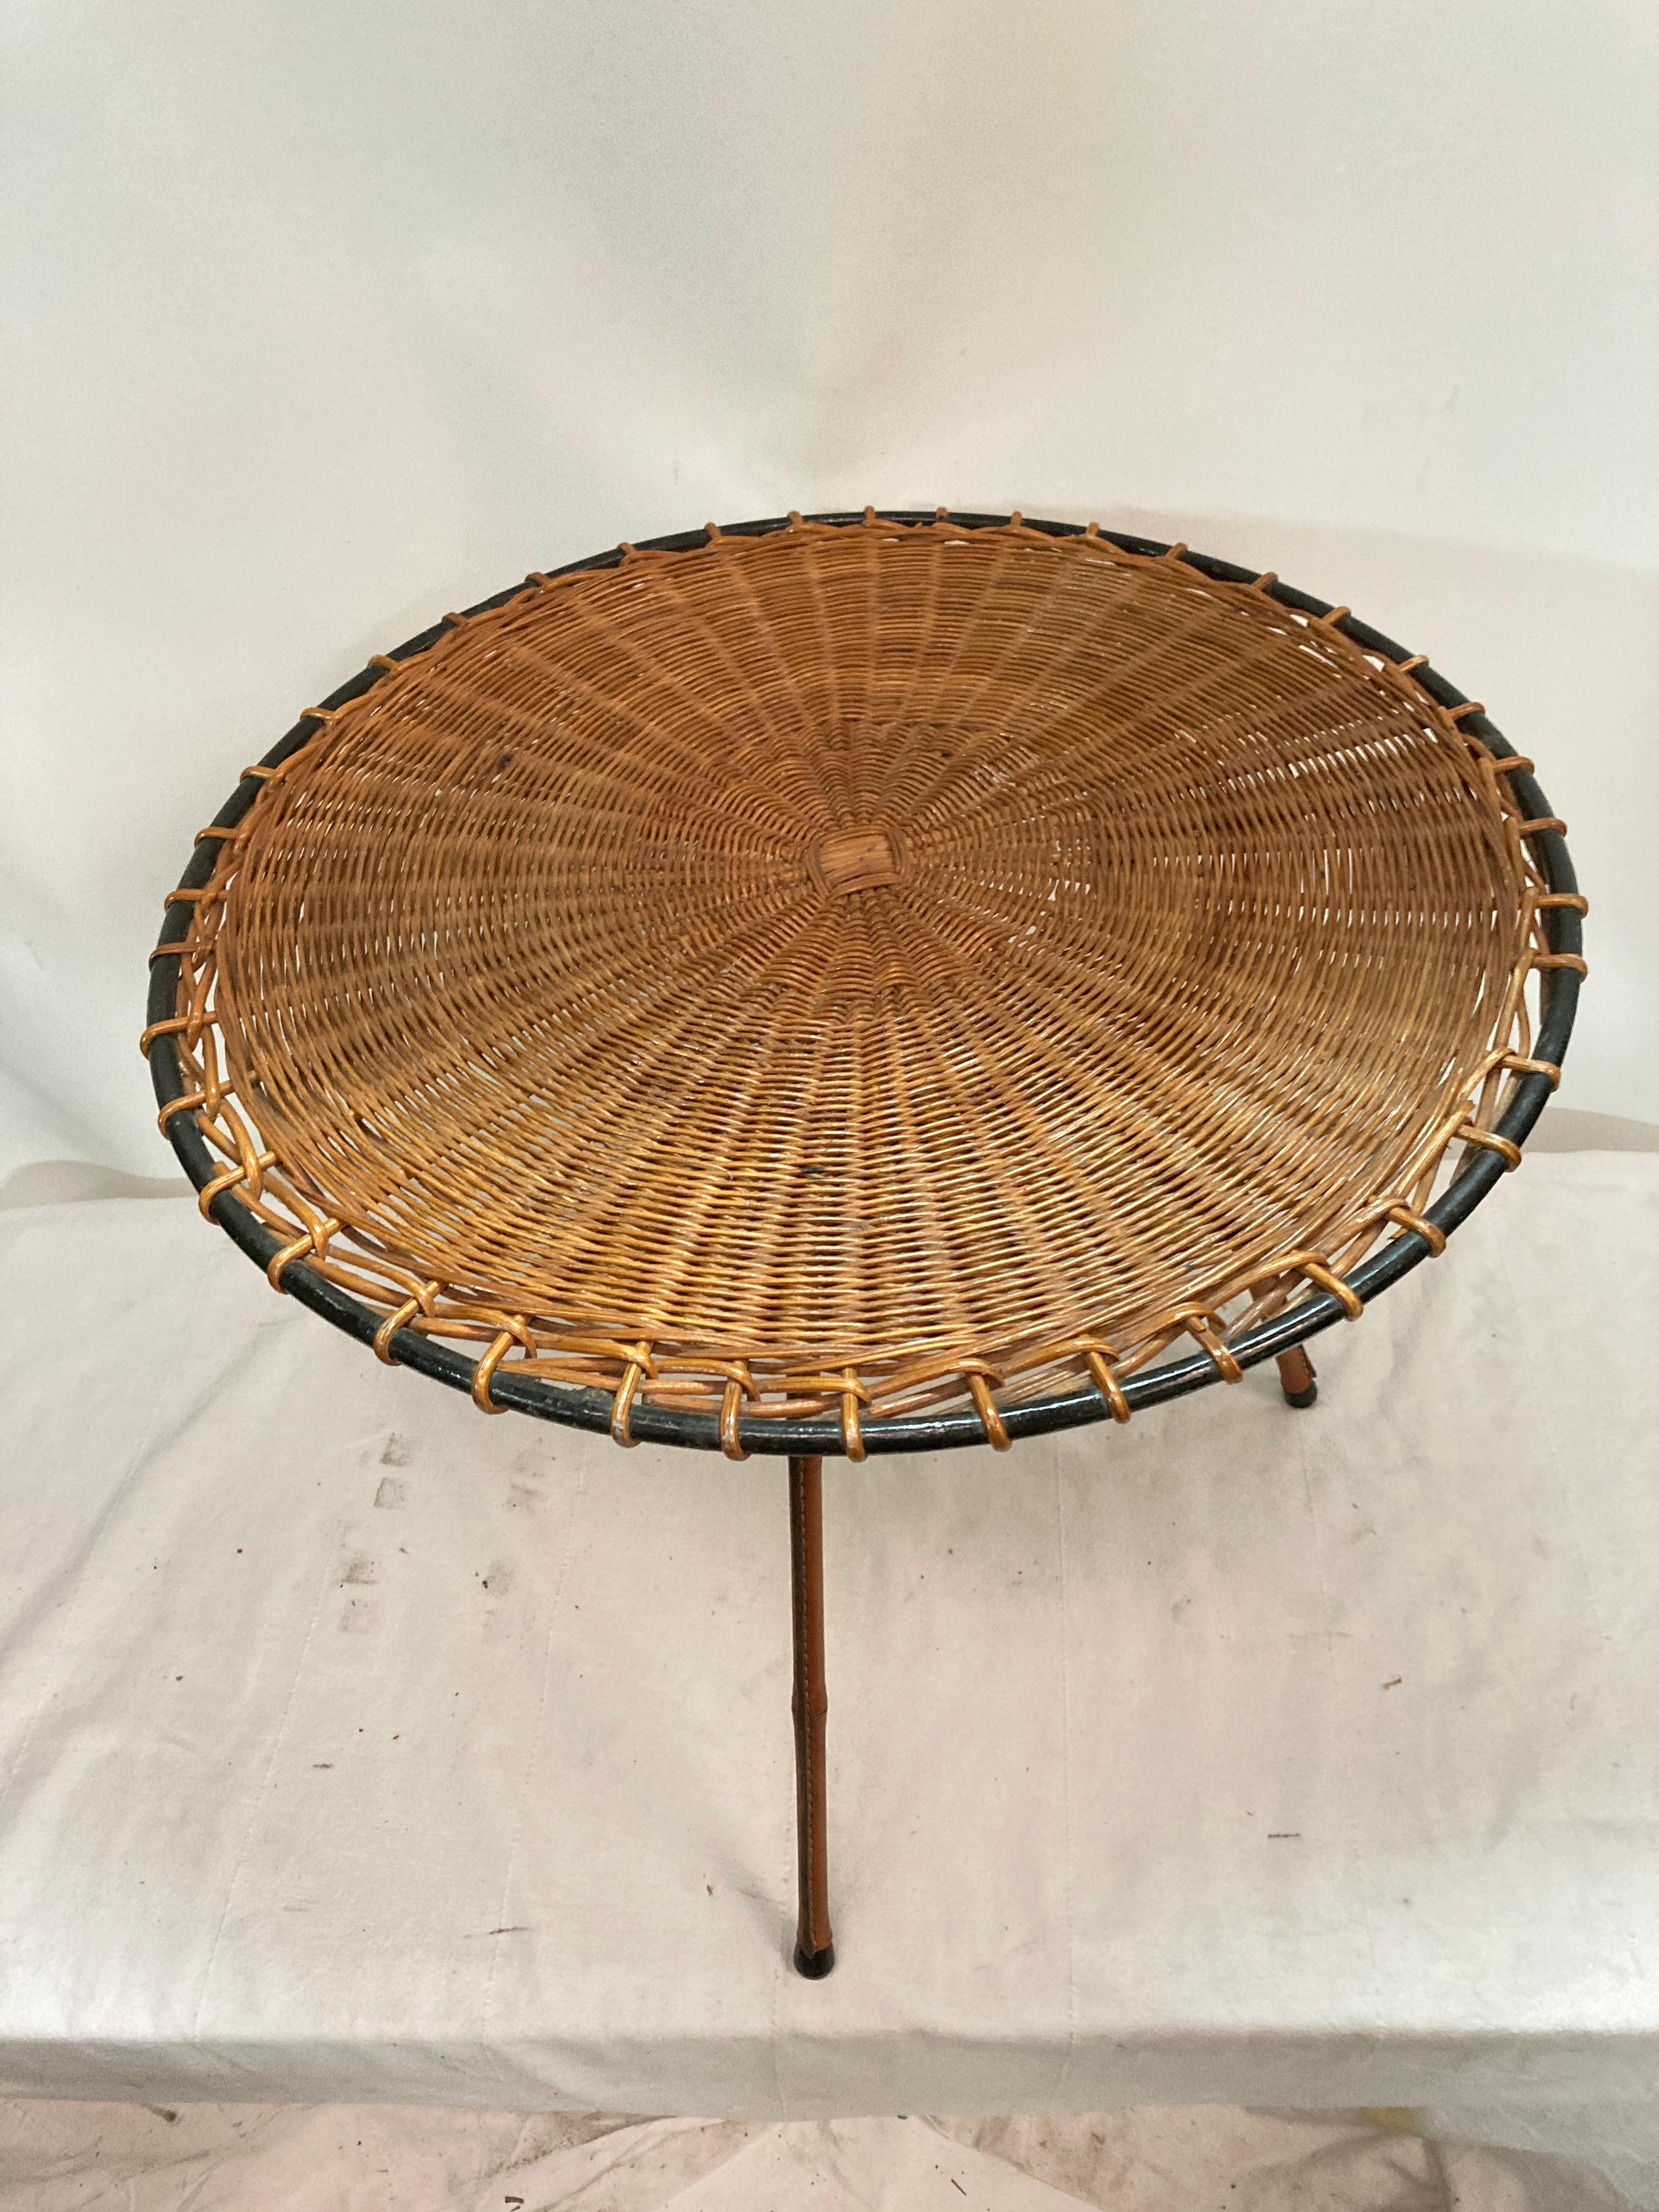 Très belle table d'appoint avec plateau en rotin et pieds en cuir surpiqué dans le style bambou.
France
1950's